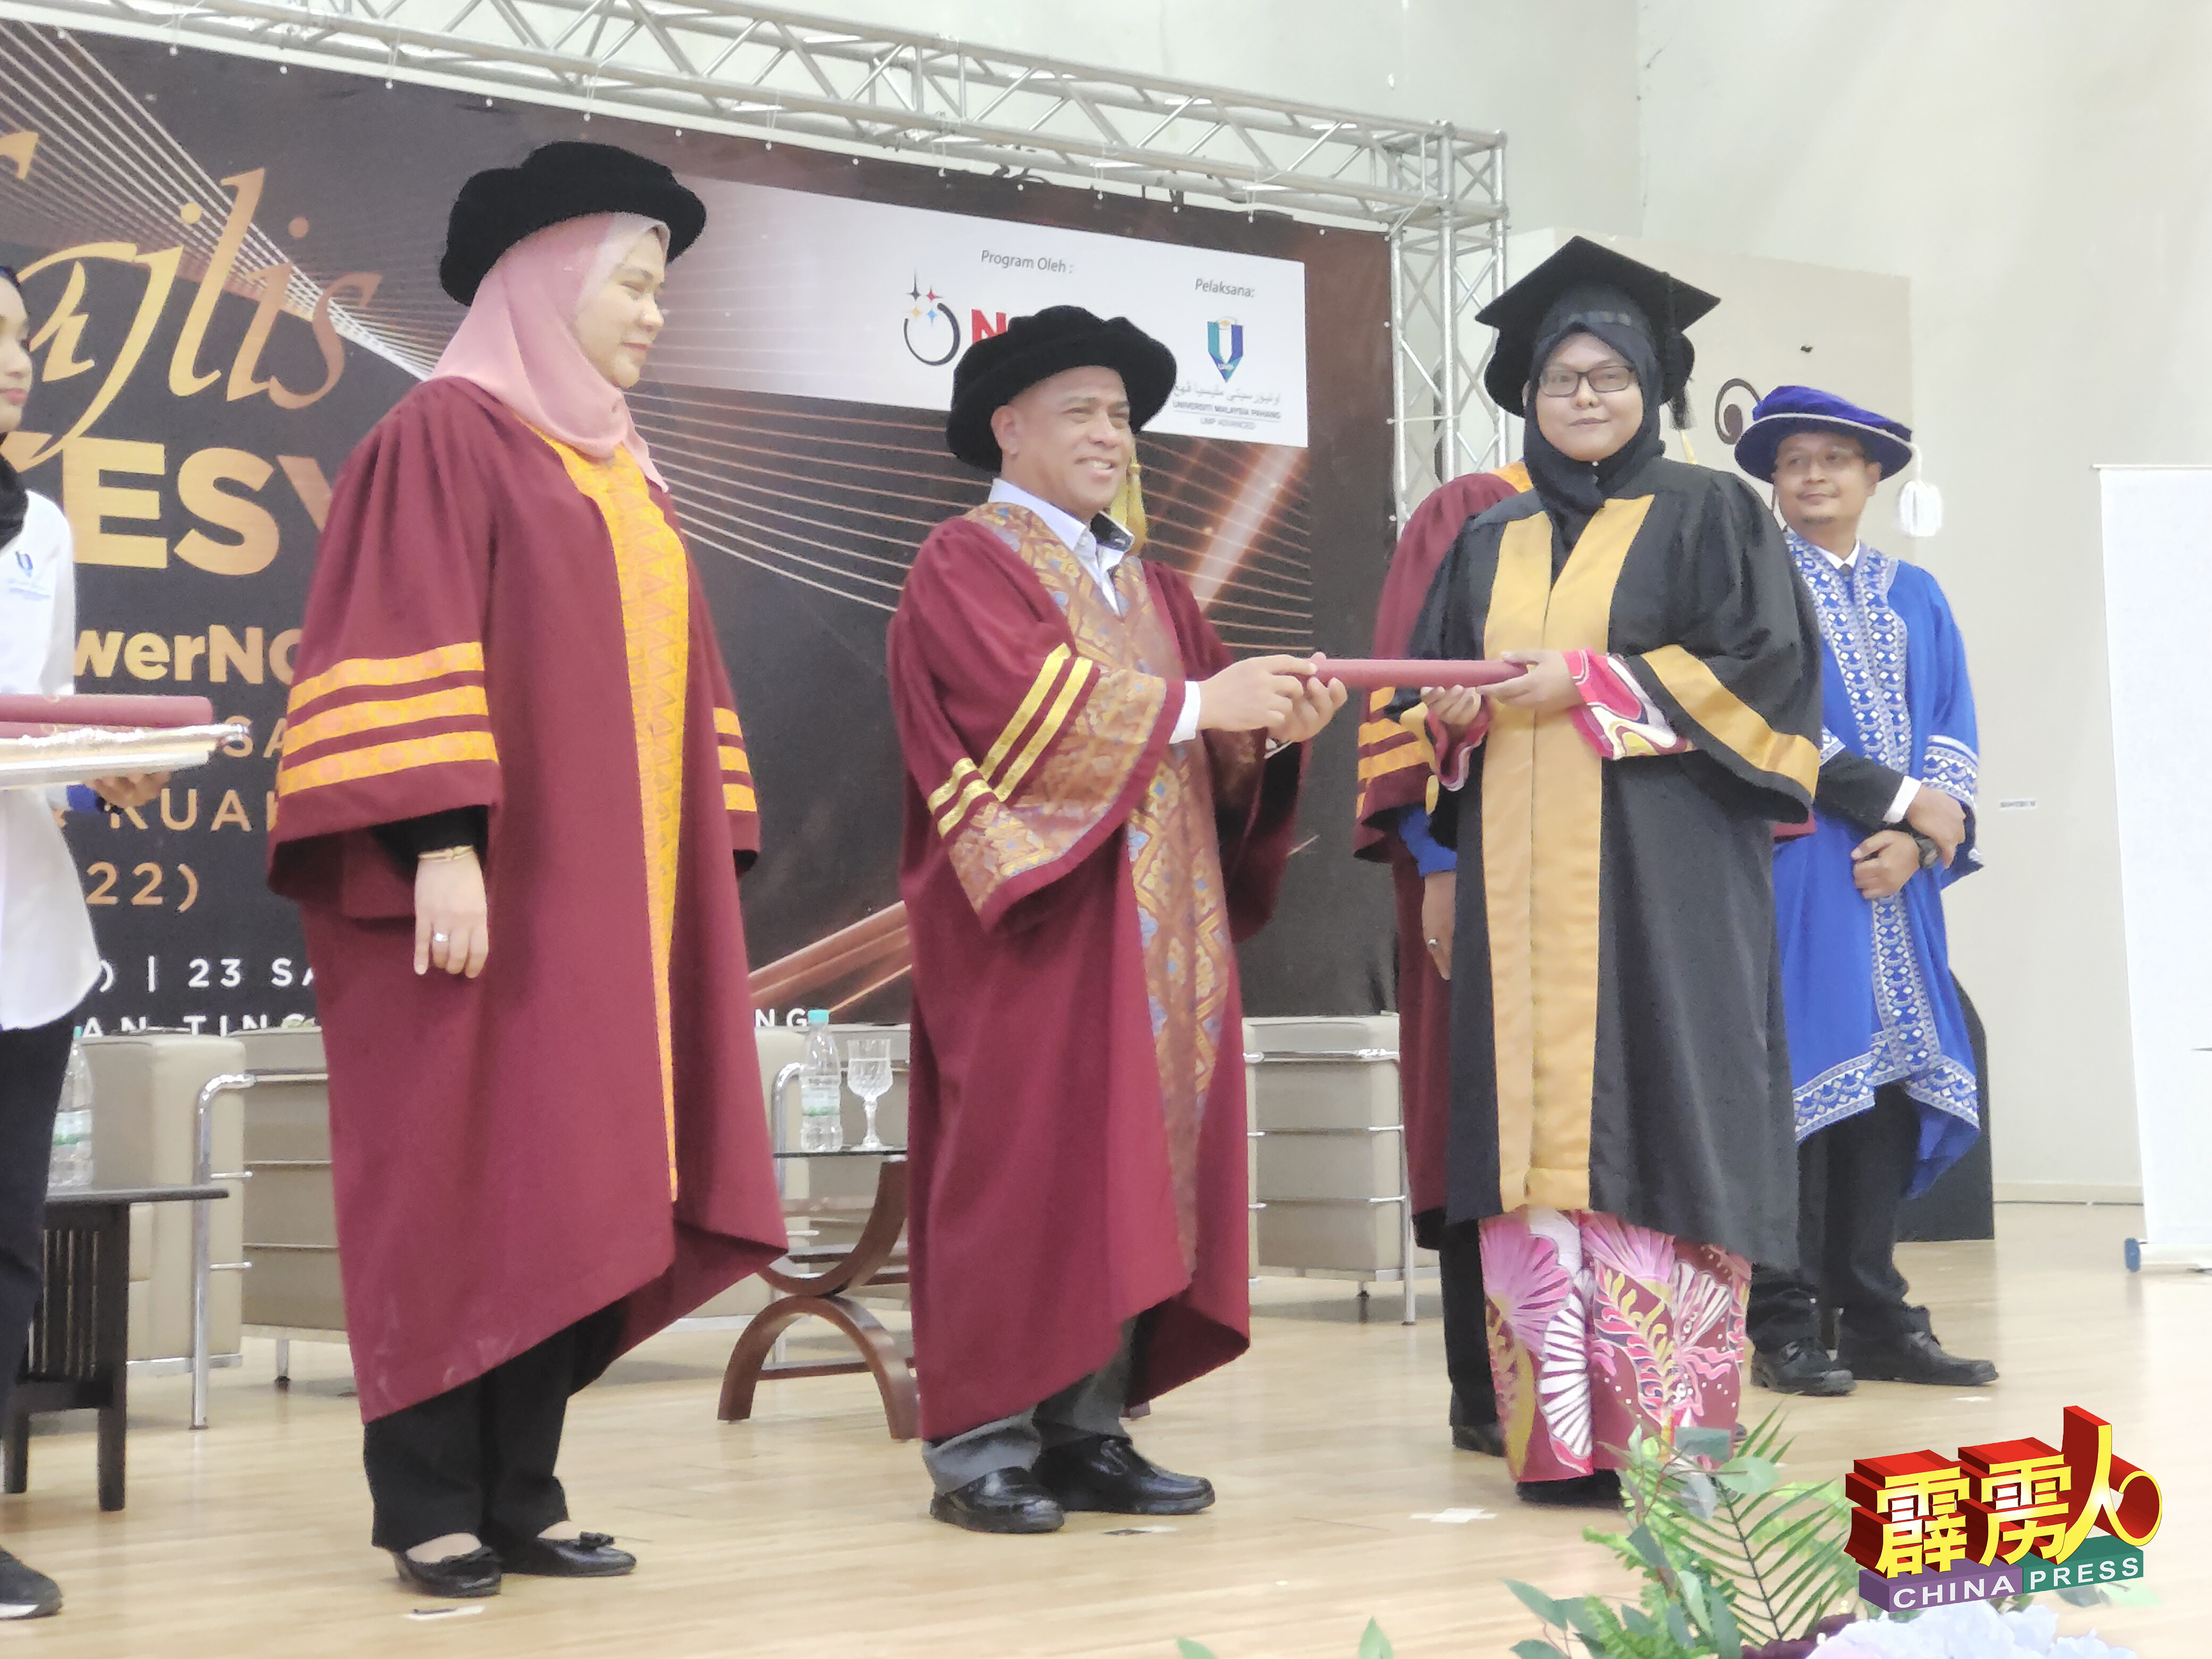 沙拉尼（中）颁发毕业证书给上霹雳其中一名女学生。左为北部经济走廊人事部主任拿汀莎迪。